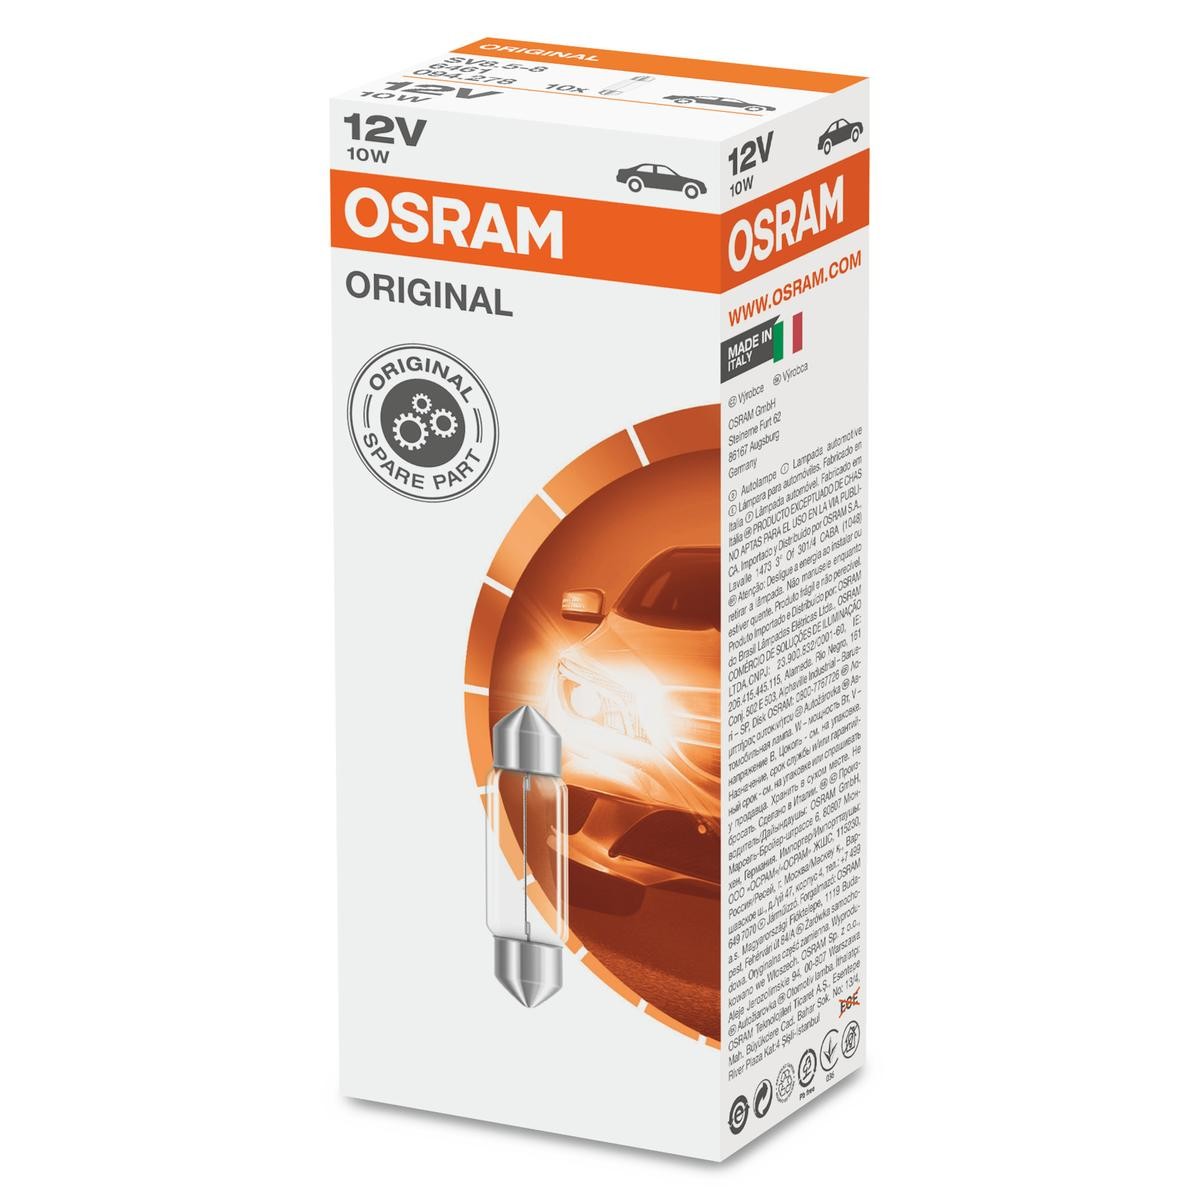 OSRAM Kofferraumbeleuchtung günstig kaufen